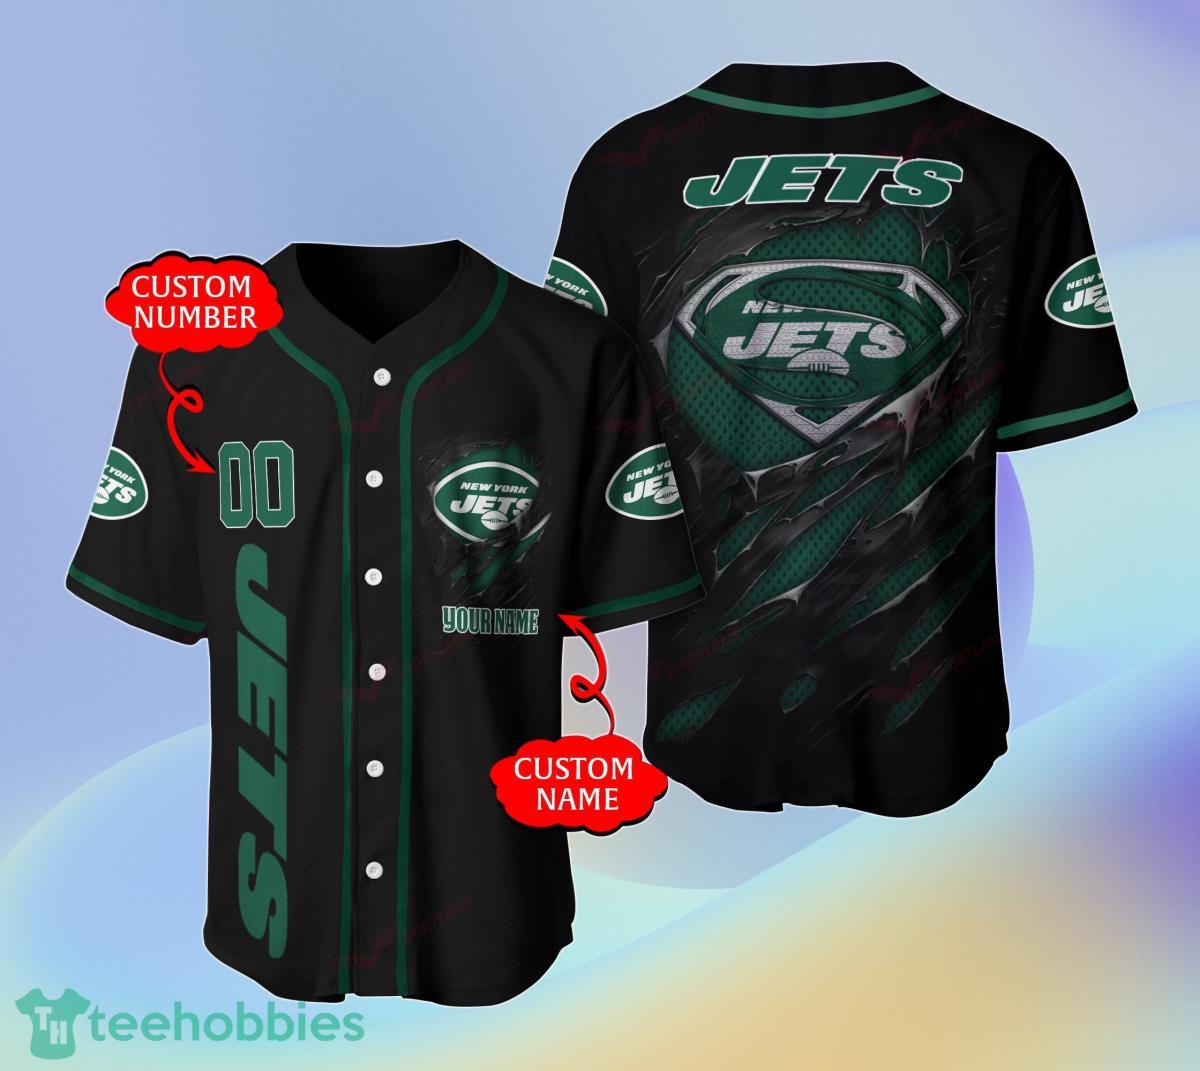 New York Jets NFL Baseball Jerseys For Men And Women